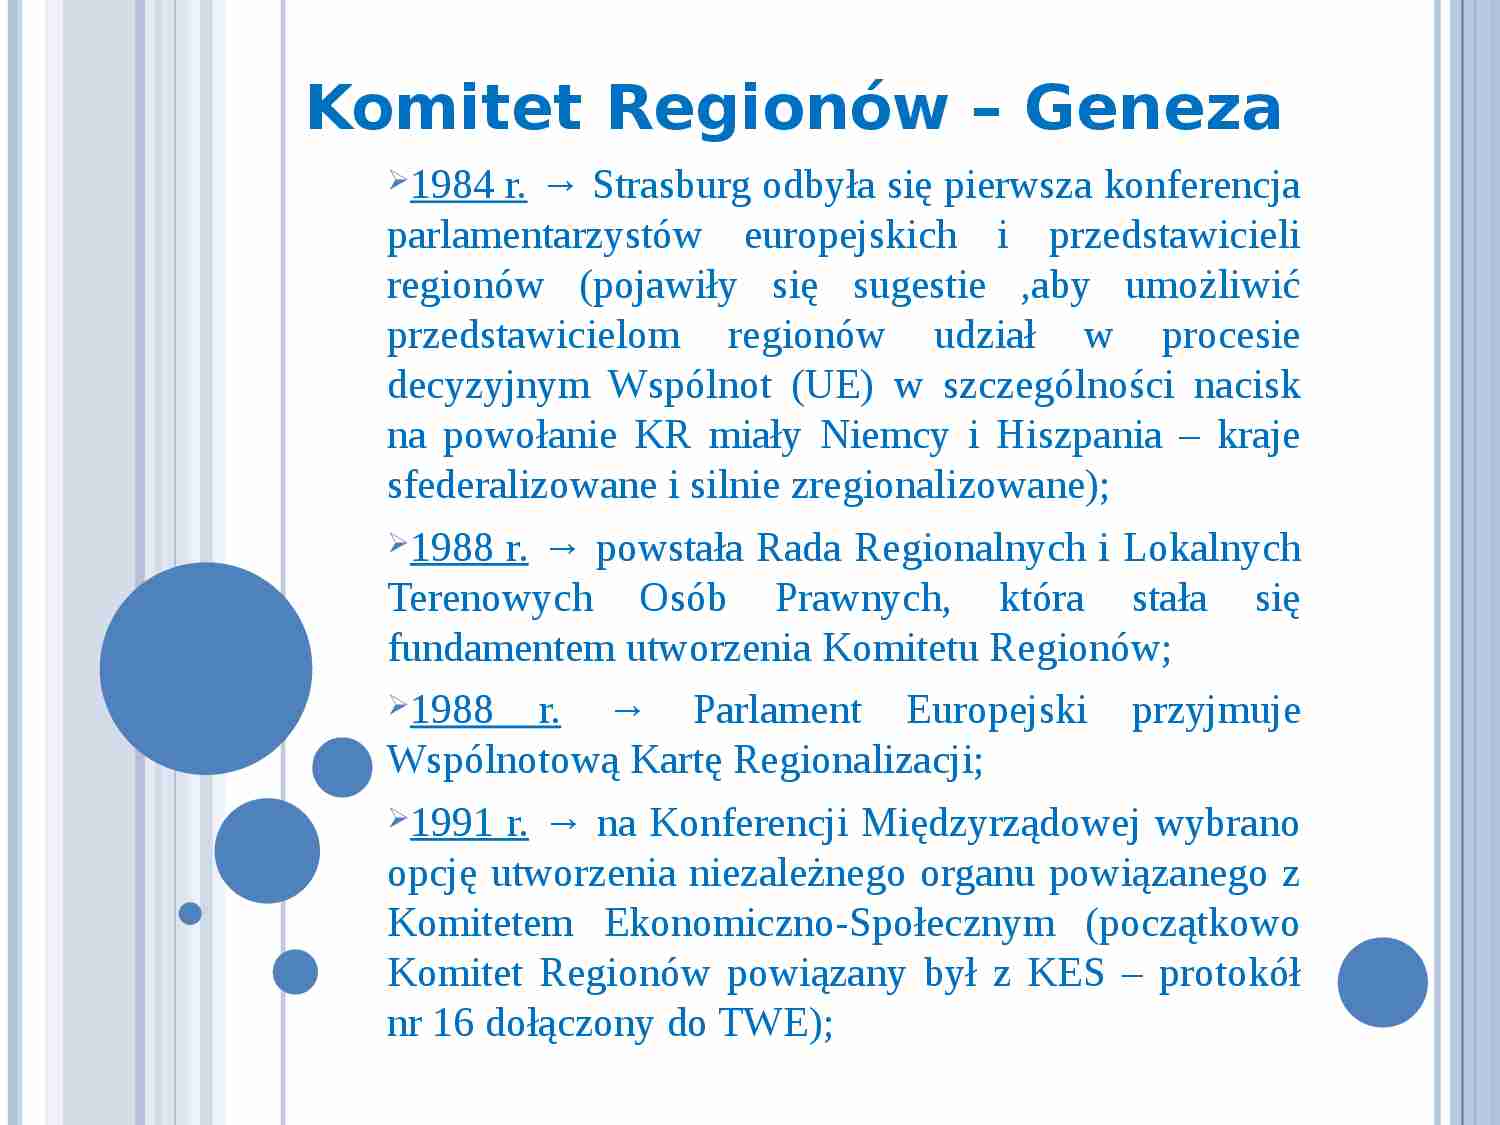 Komitet Regionów-geneza - strona 1